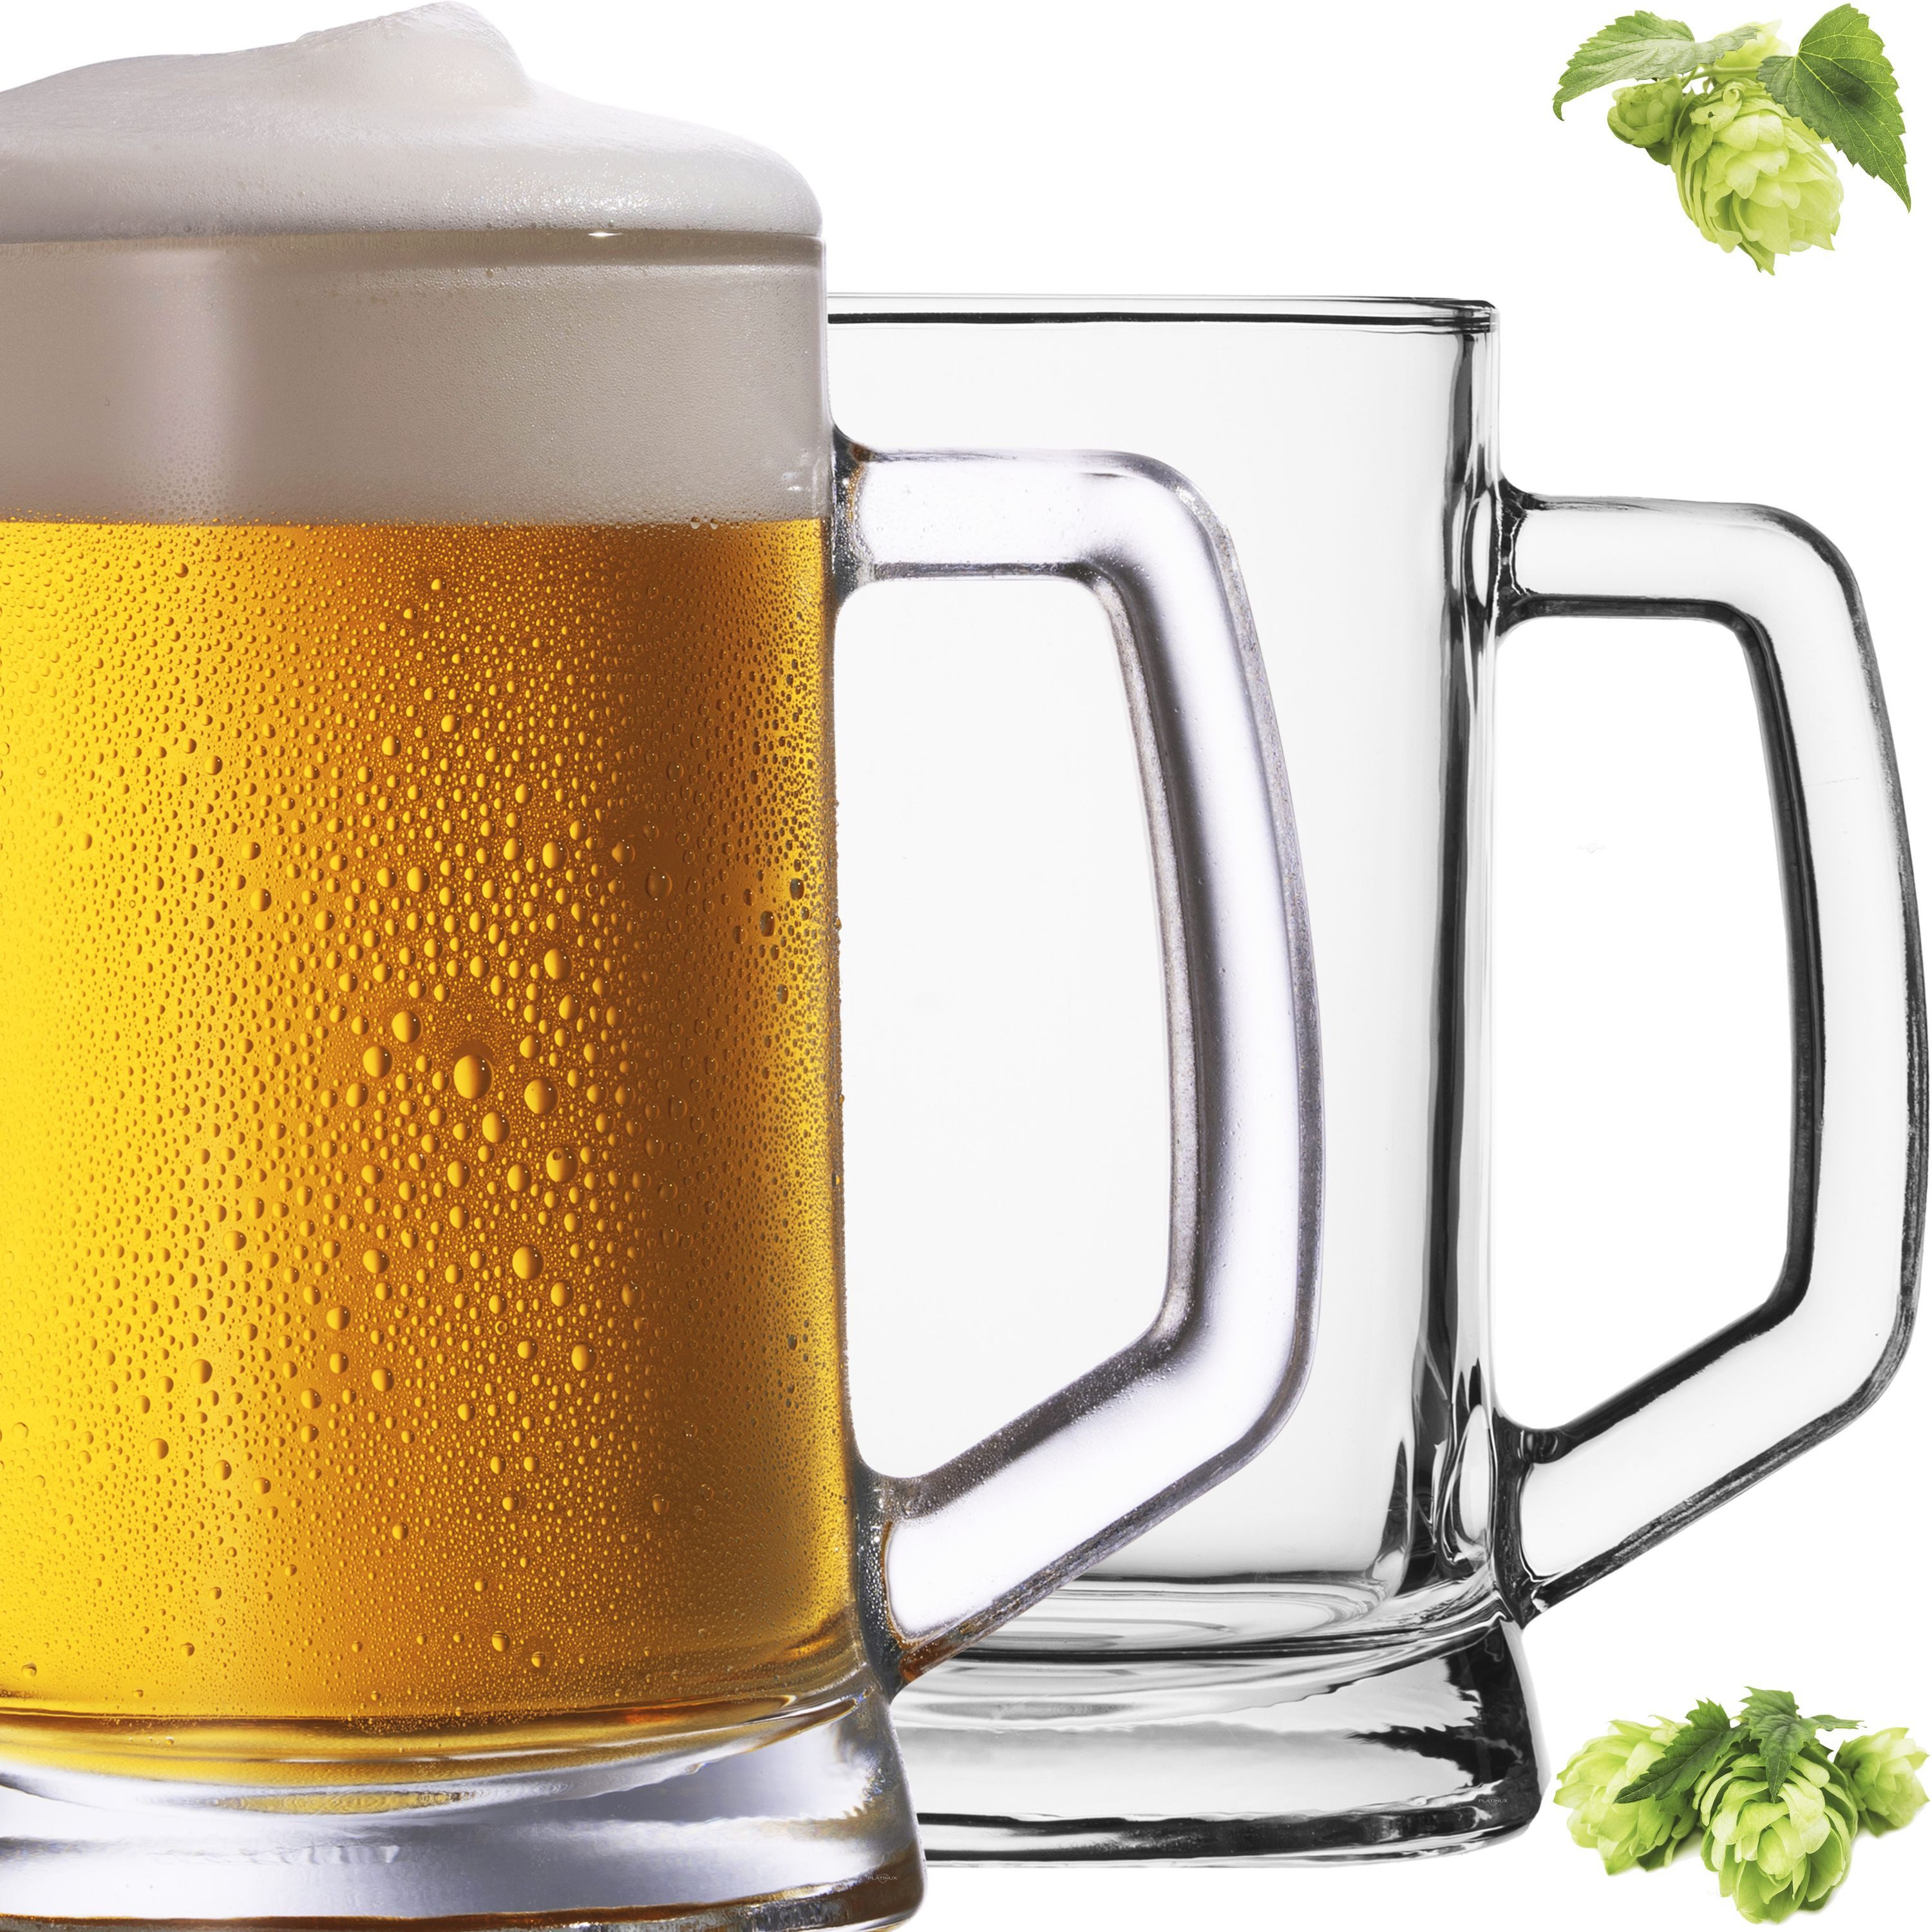 PLATINUX Bierglas Bierseidel mit Henkel Set 2 Teilig, Glas, 0,5 Liter Bierkrüge Biergläser Maßkrug Beer